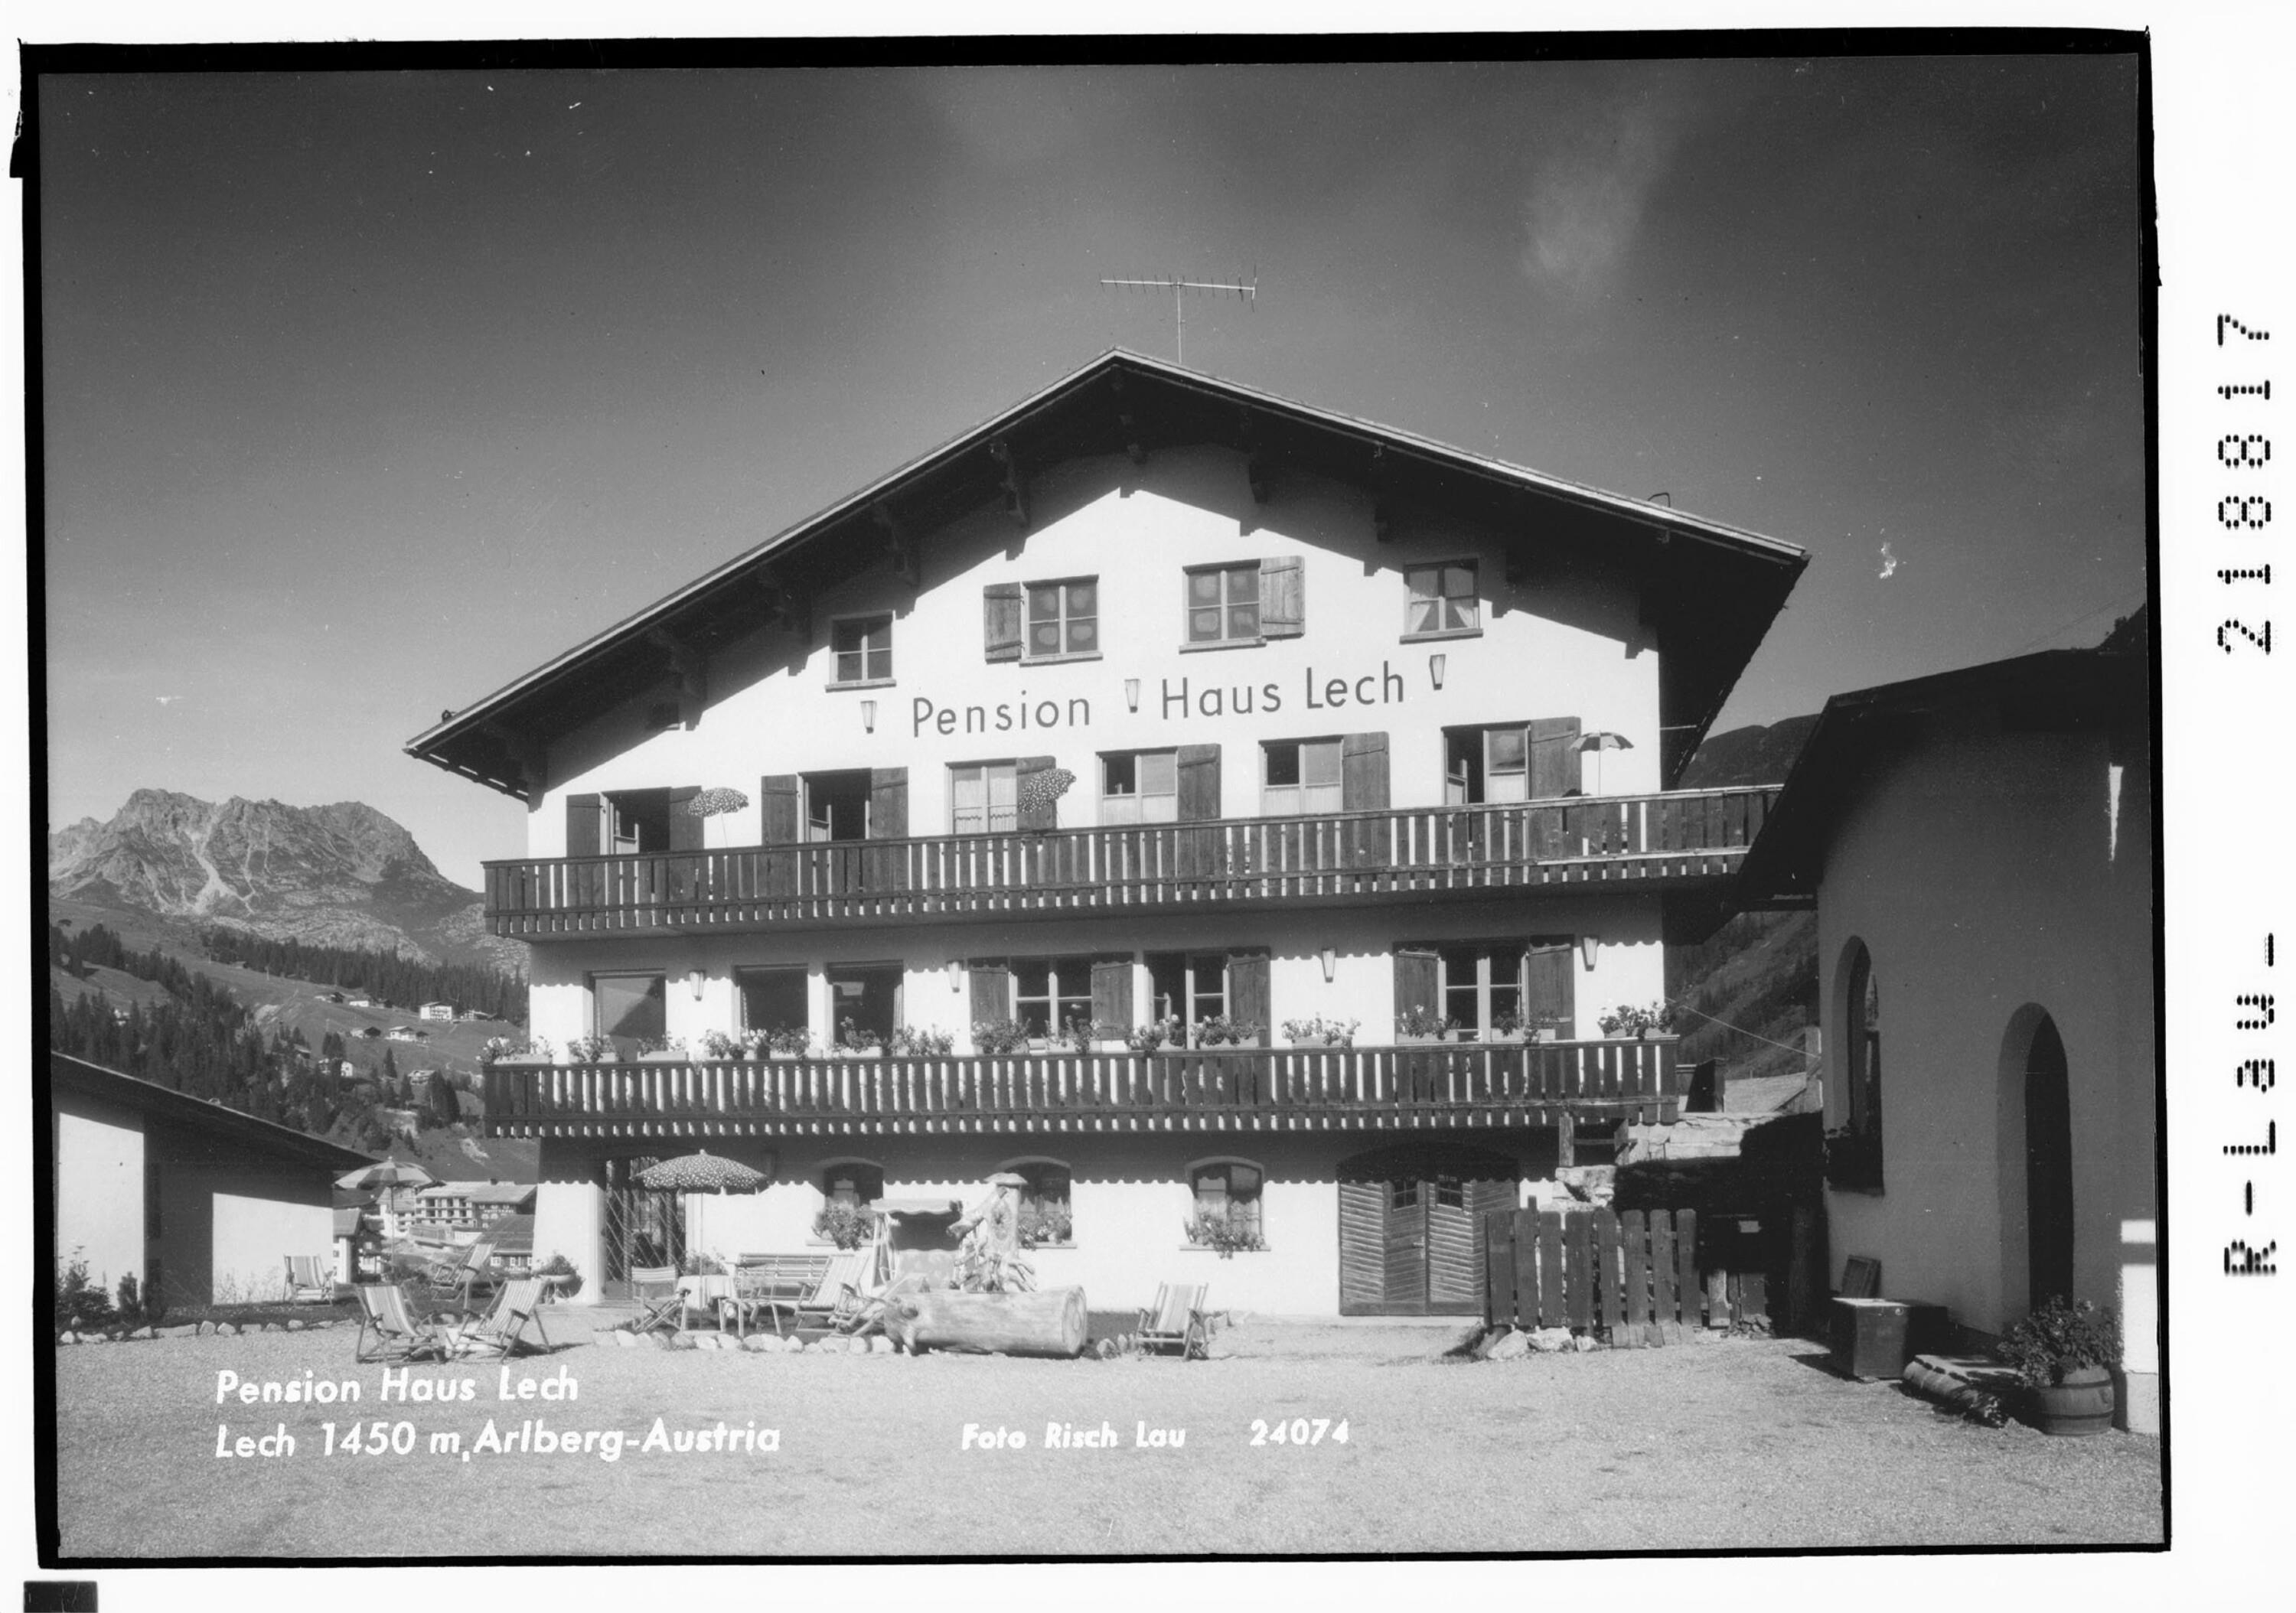 Pension Haus Lech Lech 1450 m, Arlberg - Austria></div>


    <hr>
    <div class=